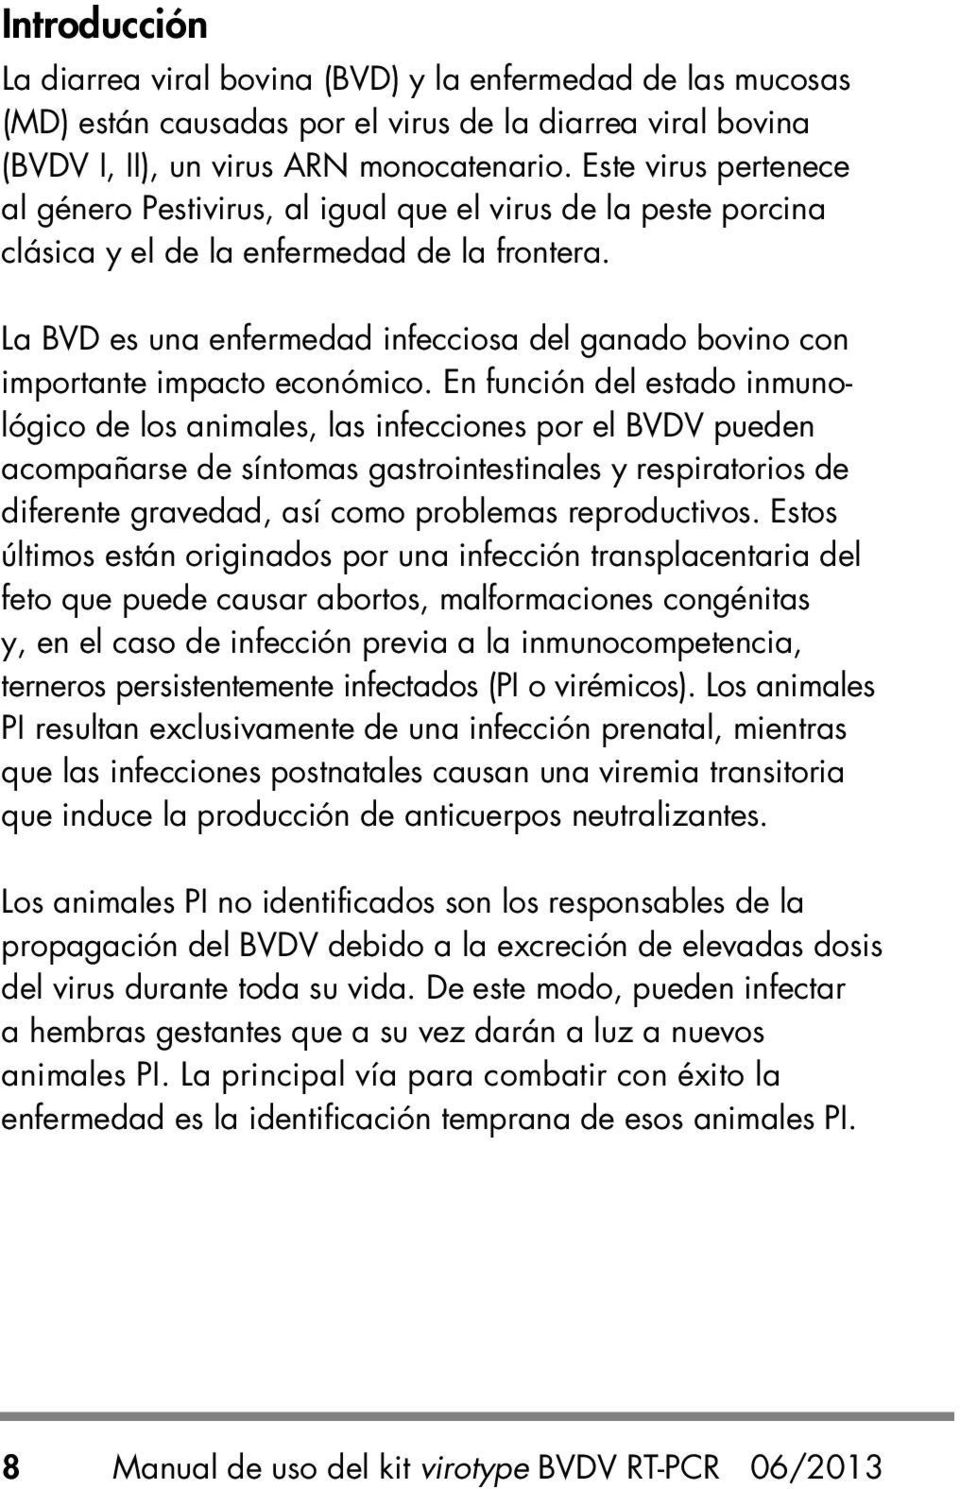 La BVD es una enfermedad infecciosa del ganado bovino con importante impacto económico.